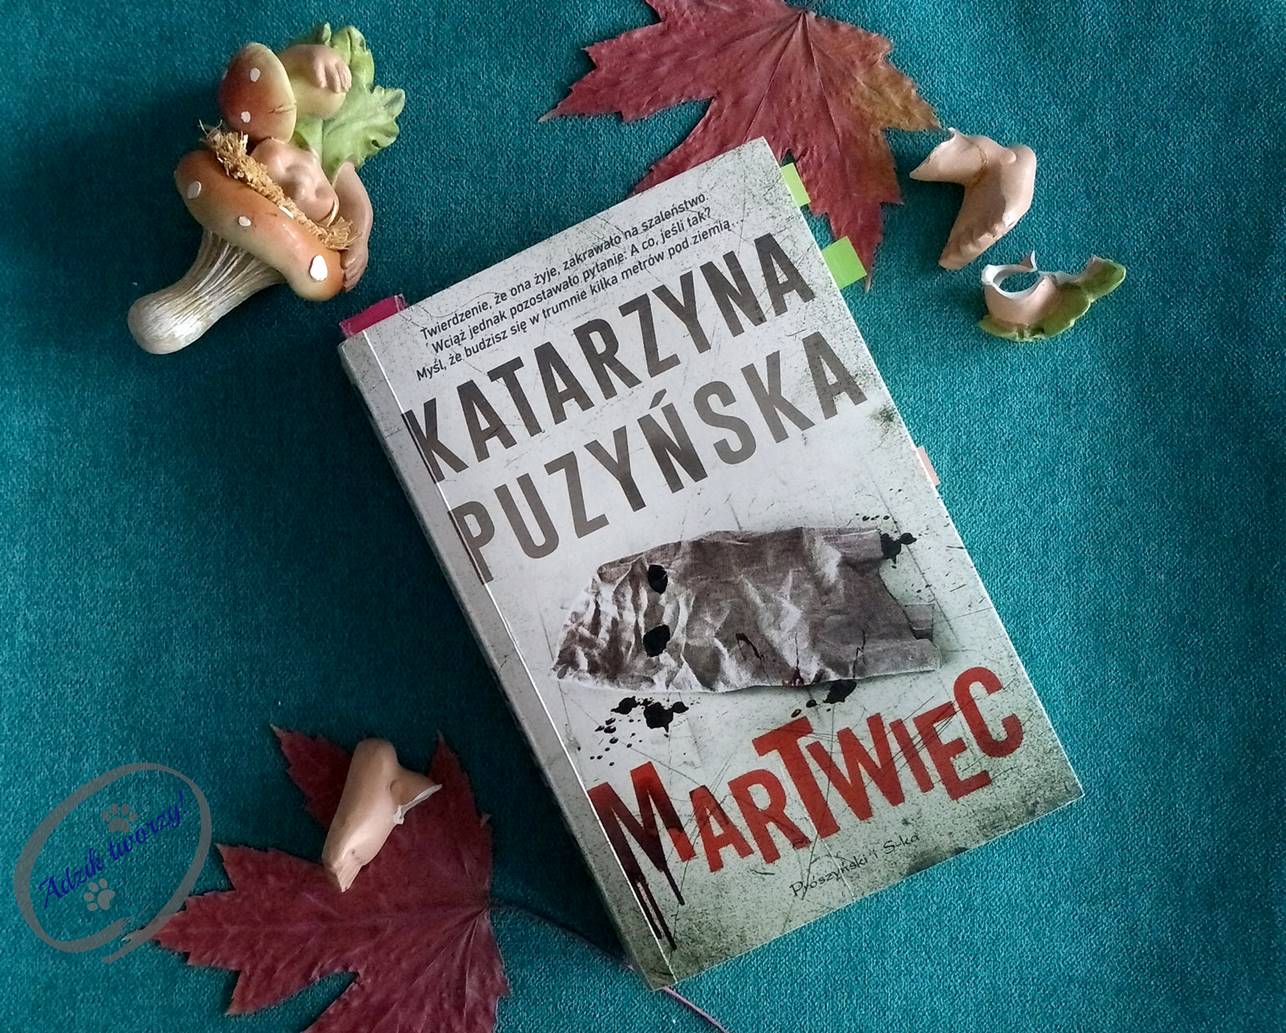 Martwiec - Katarzyna Puzyńska. Recenzja książki